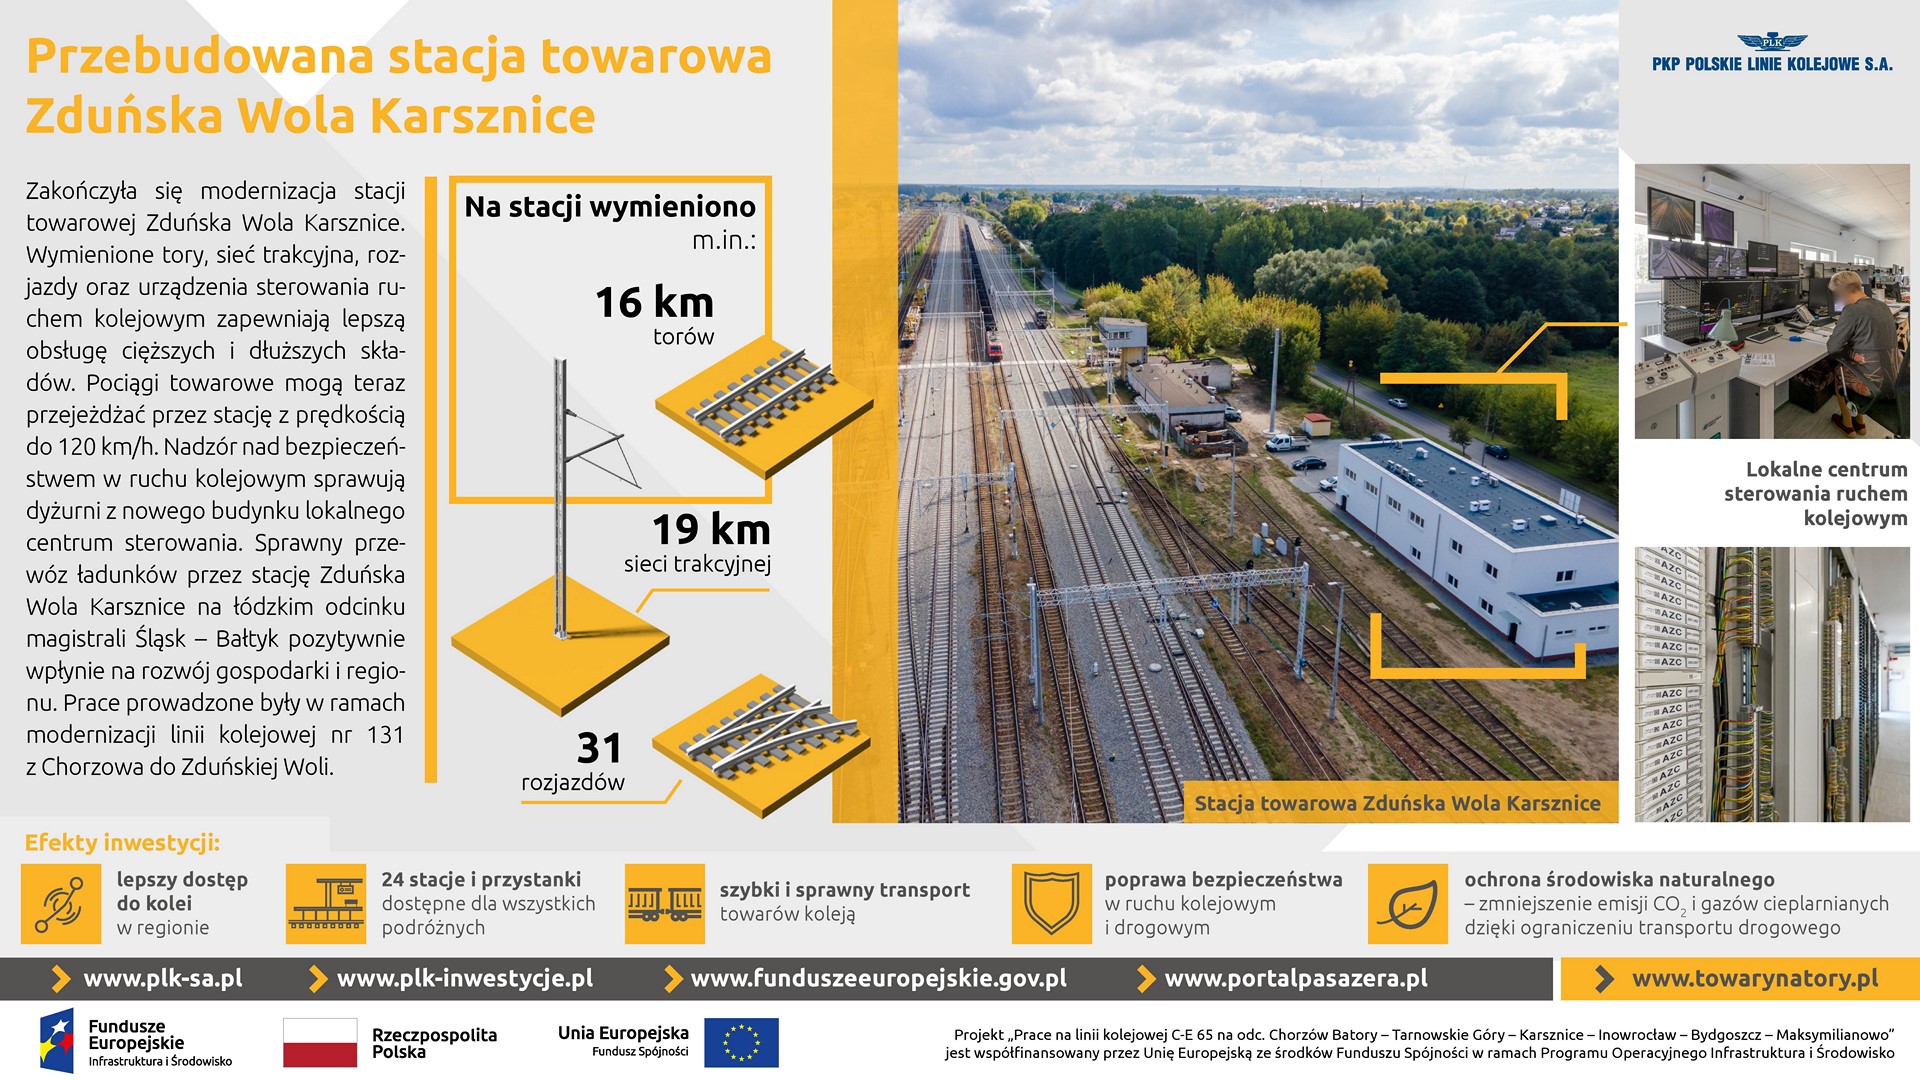 Infografika przedstawia efekty przebudowy Zduńska Wola Karsznice.